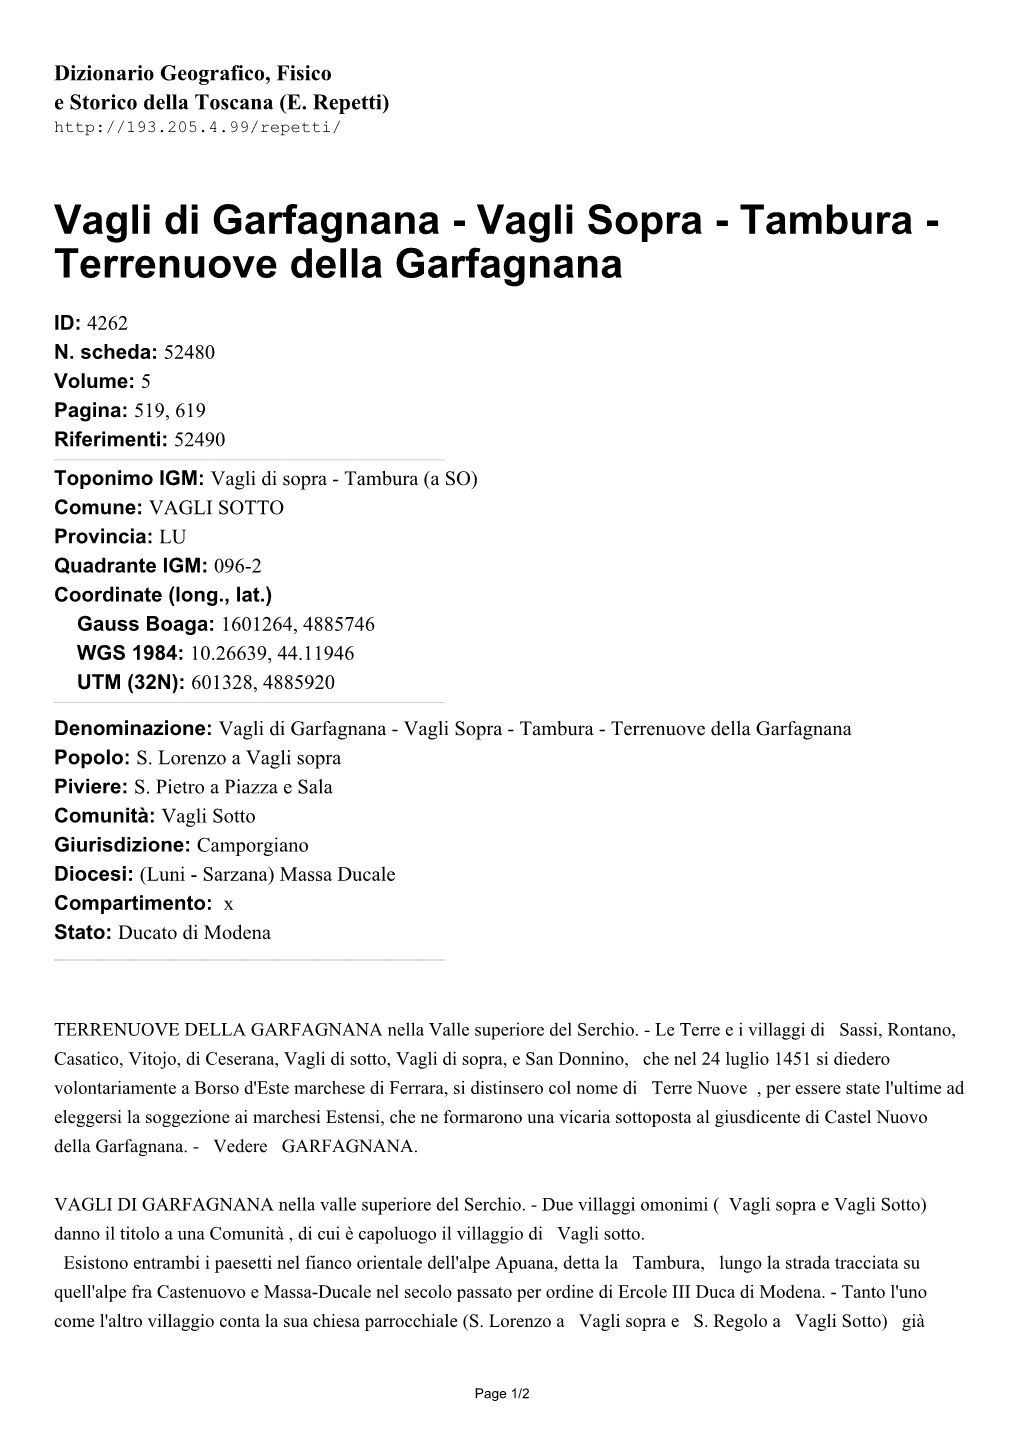 Vagli Di Garfagnana - Vagli Sopra - Tambura - Terrenuove Della Garfagnana